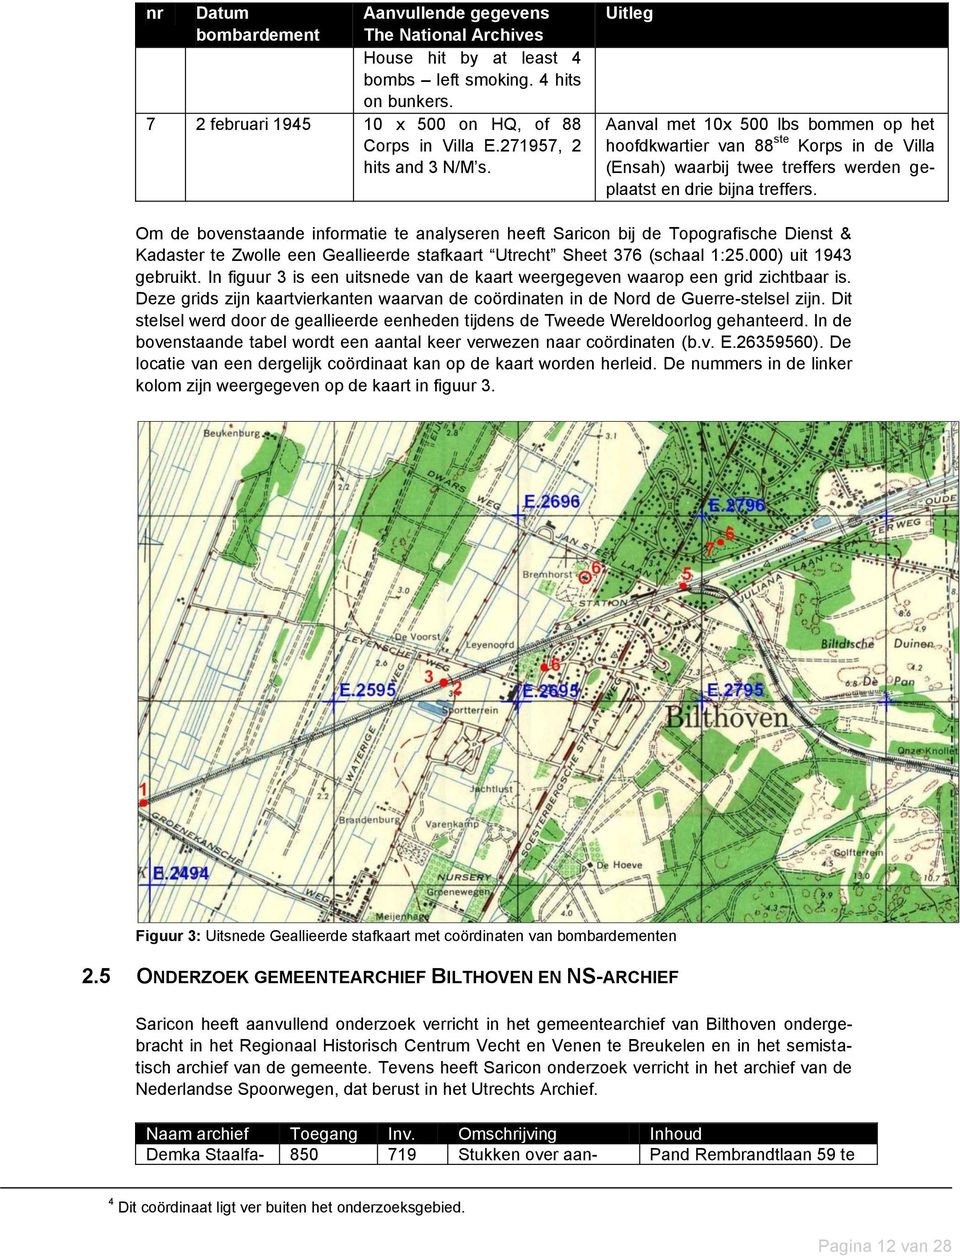 Om de bovenstaande informatie te analyseren heeft Saricon bij de Topografische Dienst & Kadaster te Zwolle een Geallieerde stafkaart Utrecht Sheet 376 (schaal 1:25.000) uit 1943 gebruikt.